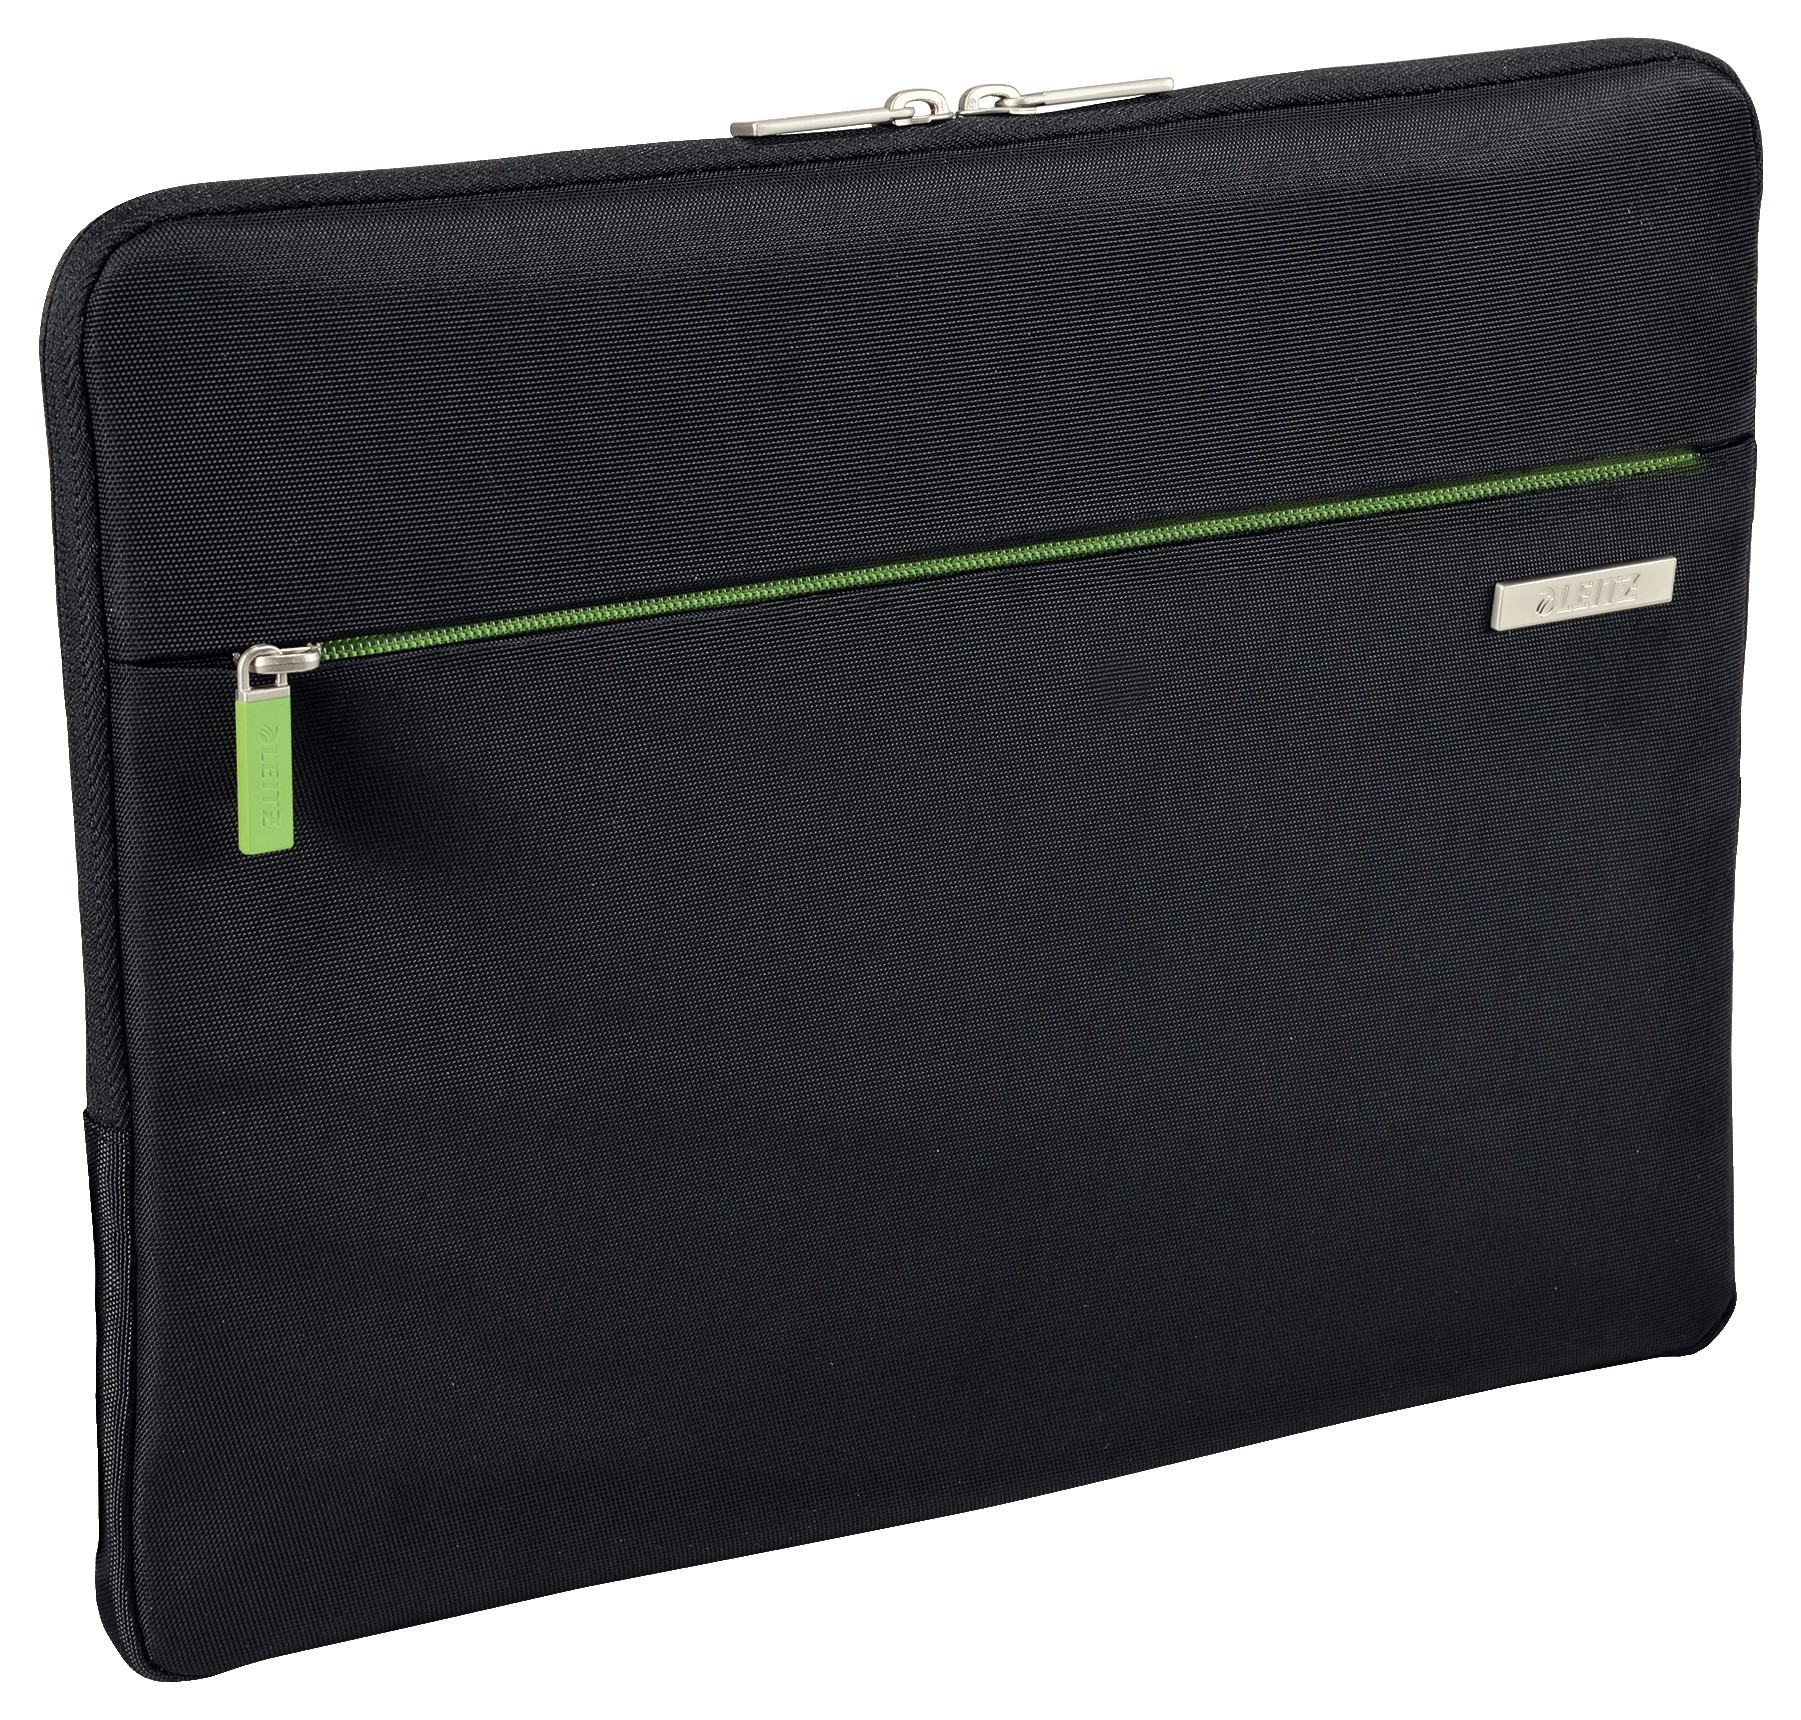 LEITZ Laptop cover schwarz 62240095 15,6 pouces polyester